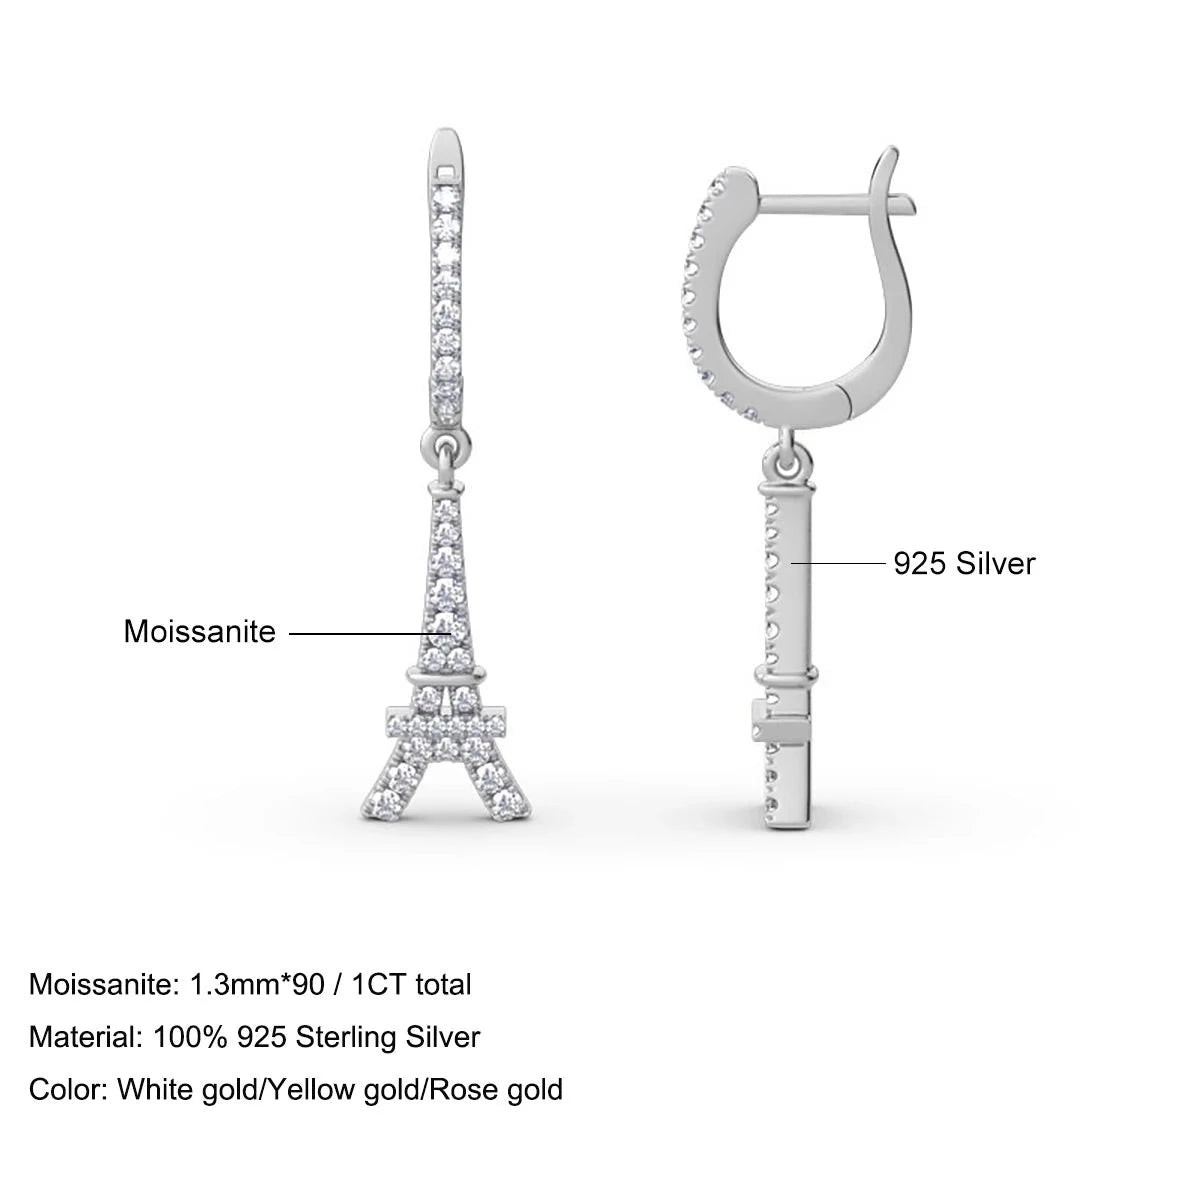 Eiffel Tower Shaped Moissanite Earrings. Total 1.0 Carat Genuine Moissanite.